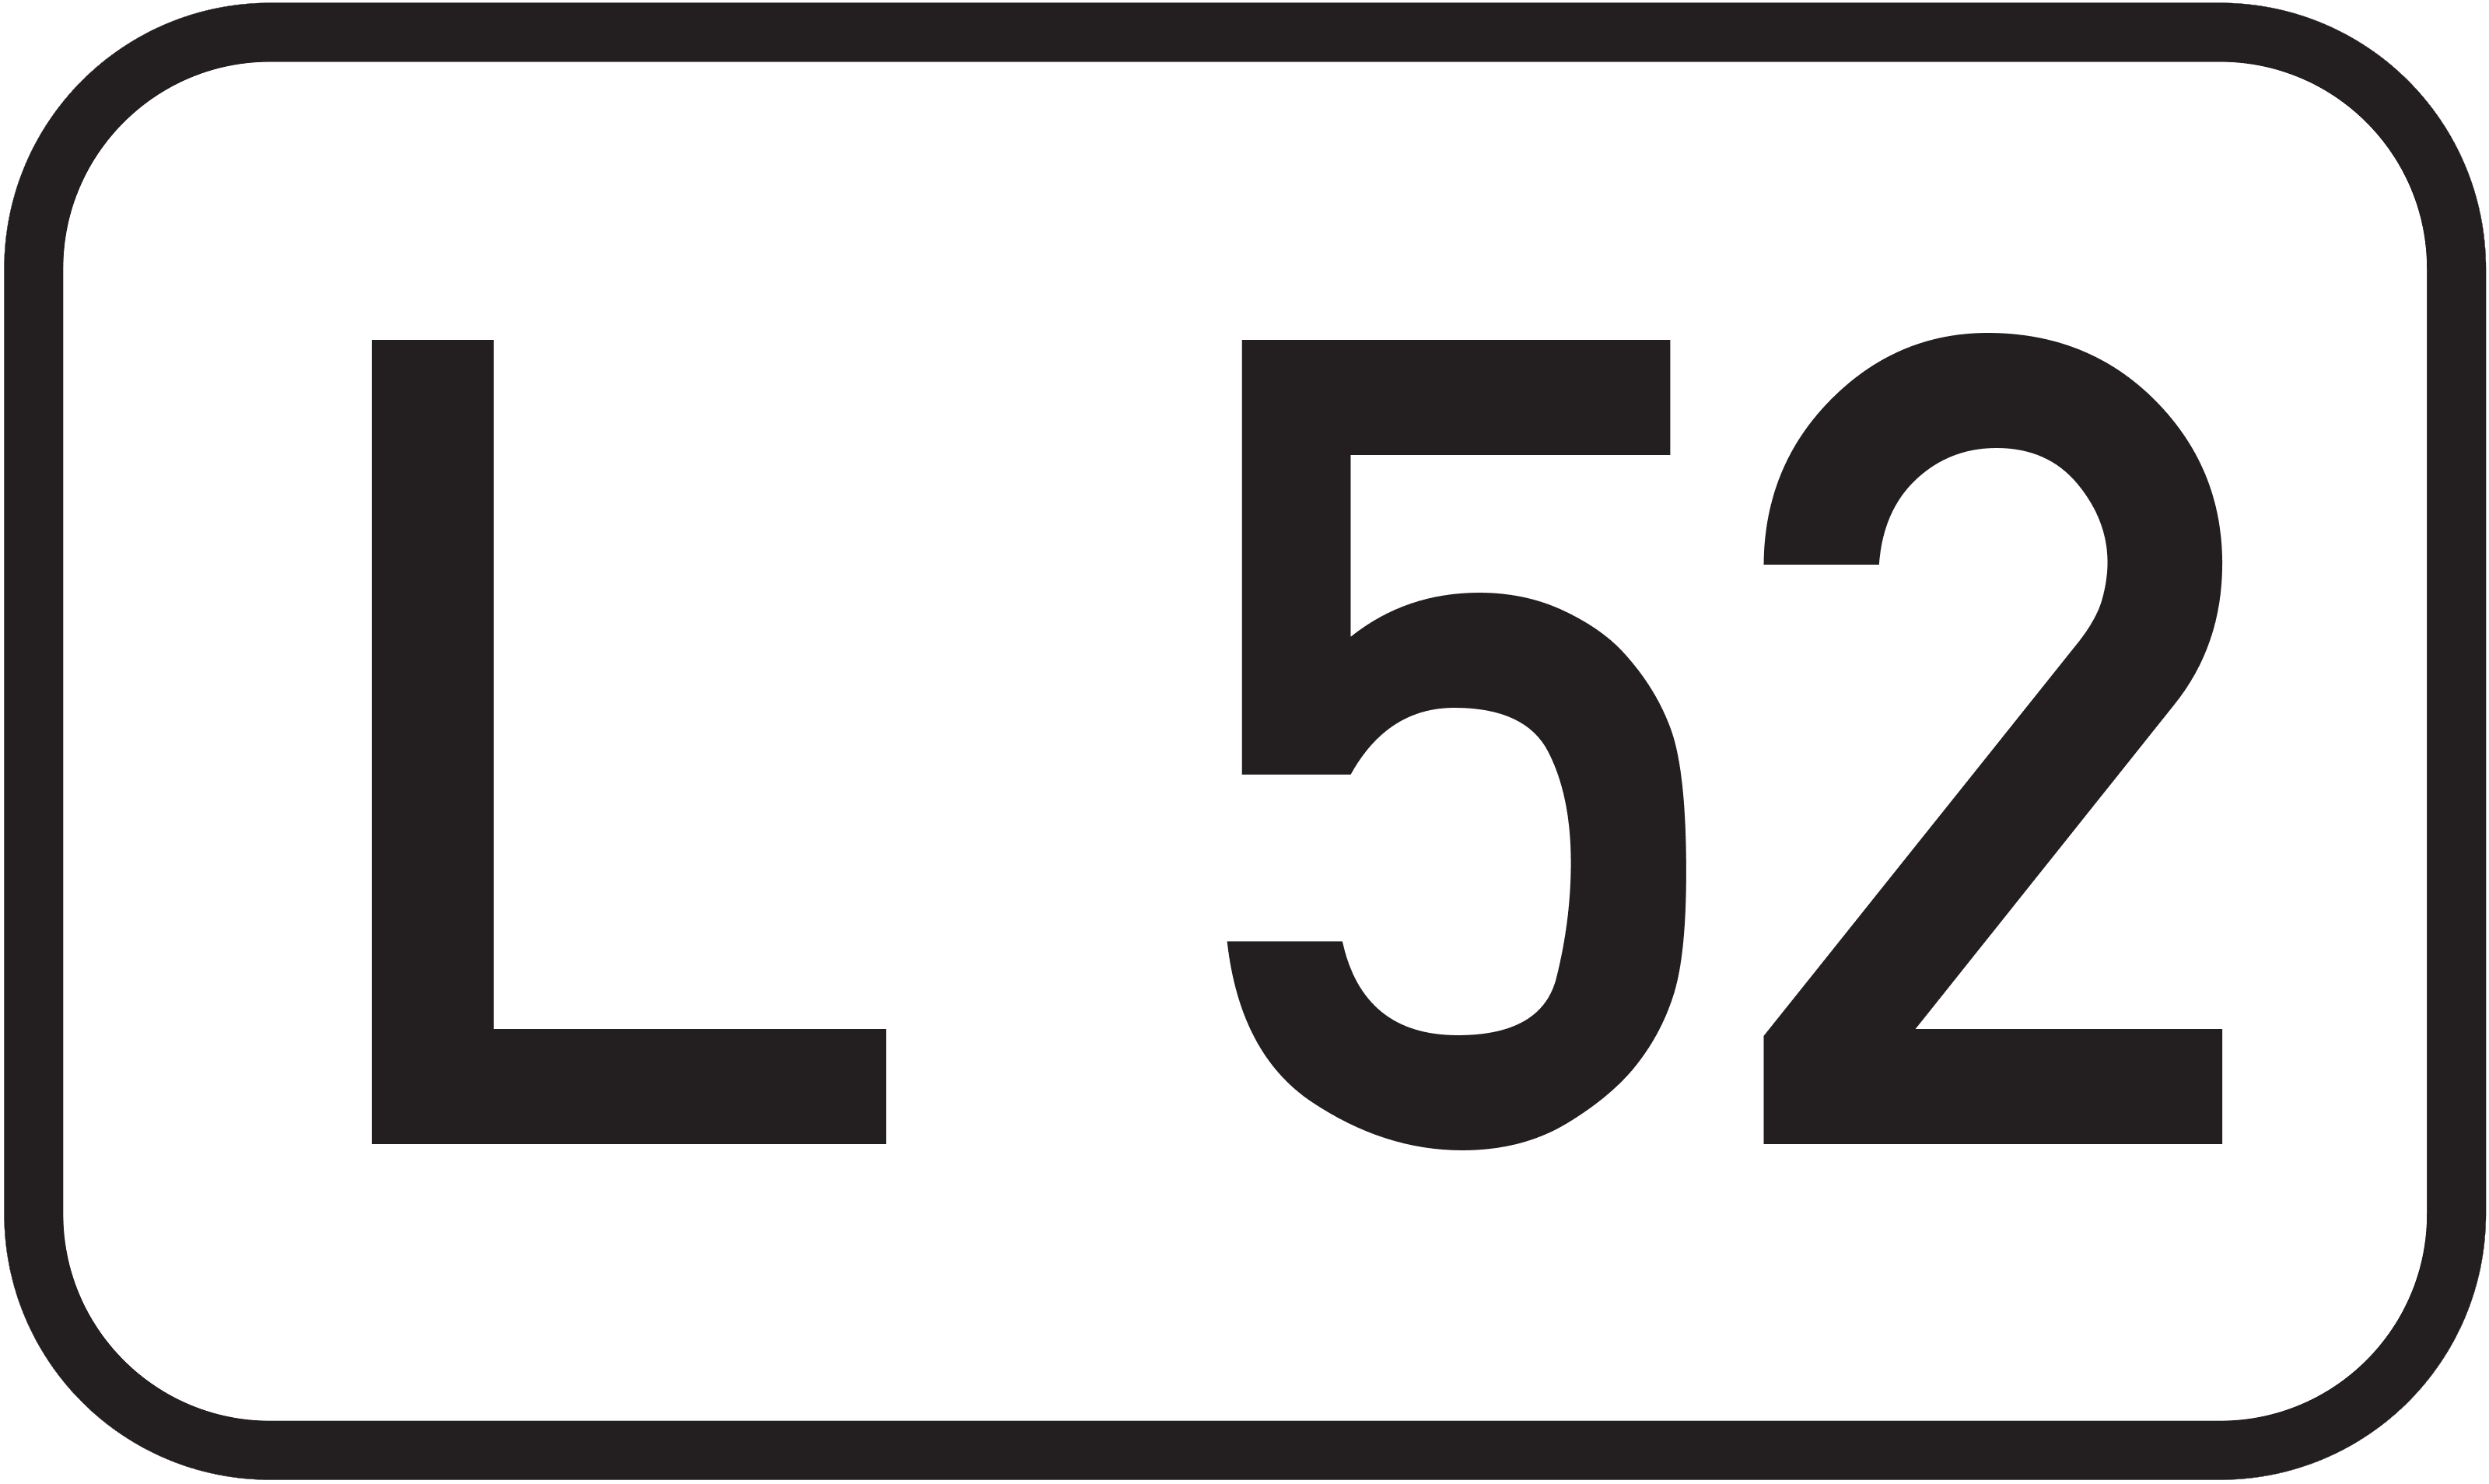 Landesstraße L 52